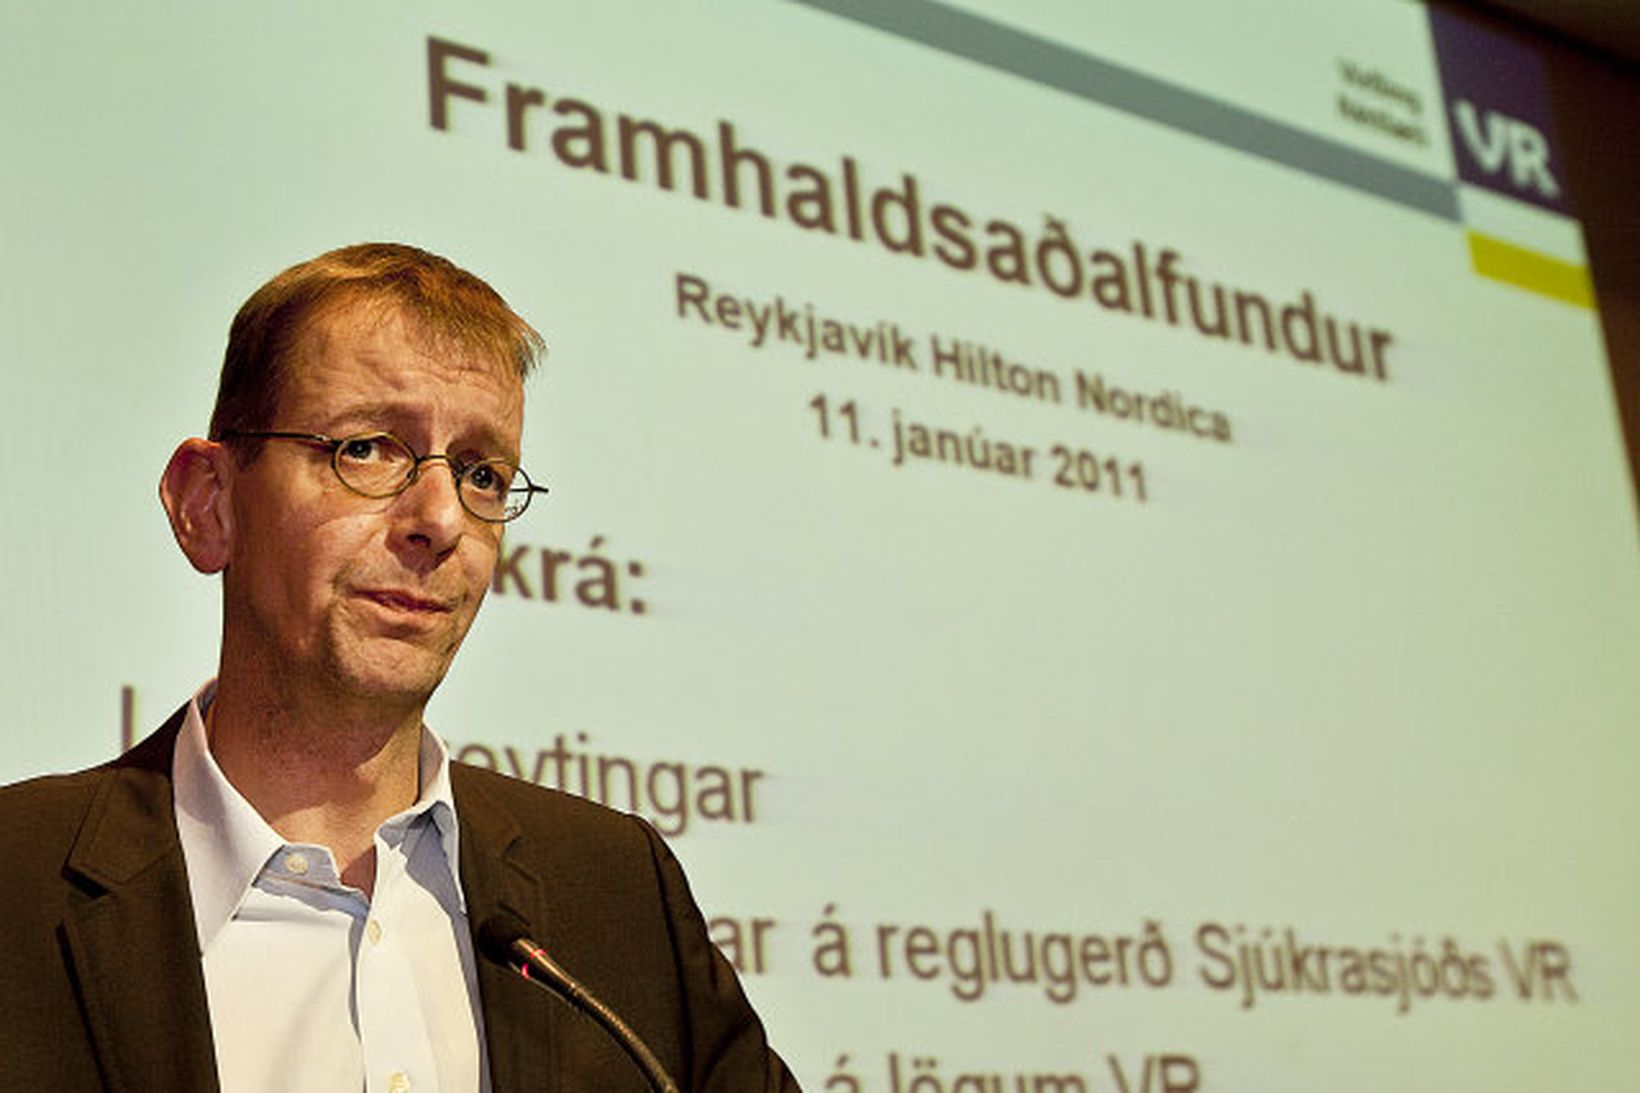 Núverandi formaður VR er Kristinn Örn Jóhannesson.